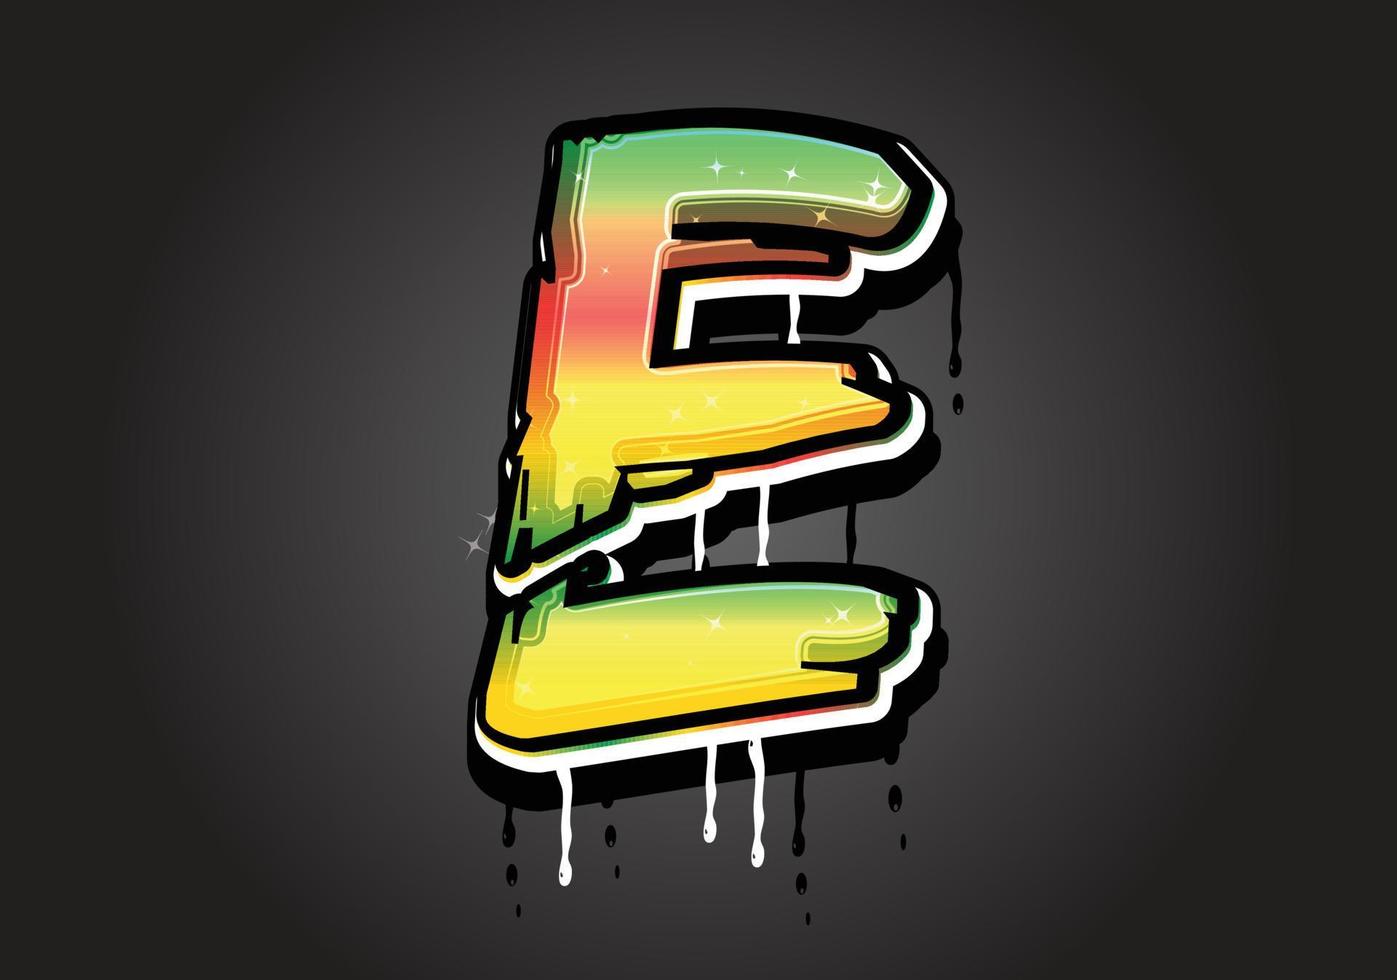 E Brush Letter logo vector